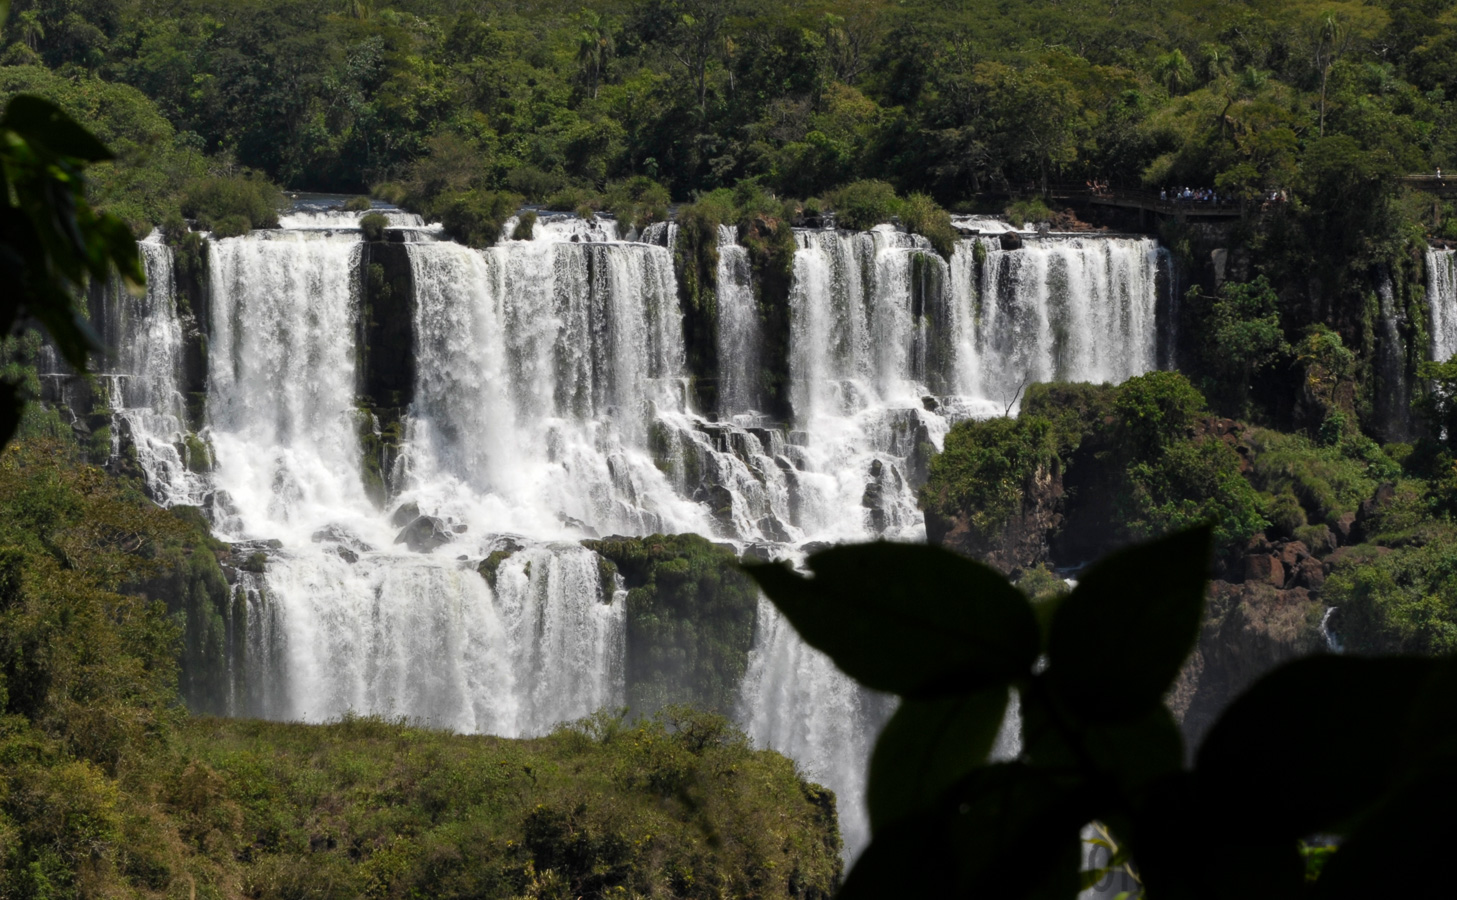 Cataratas del Iguazu [135 mm, 1/250 sec at f / 16, ISO 400]